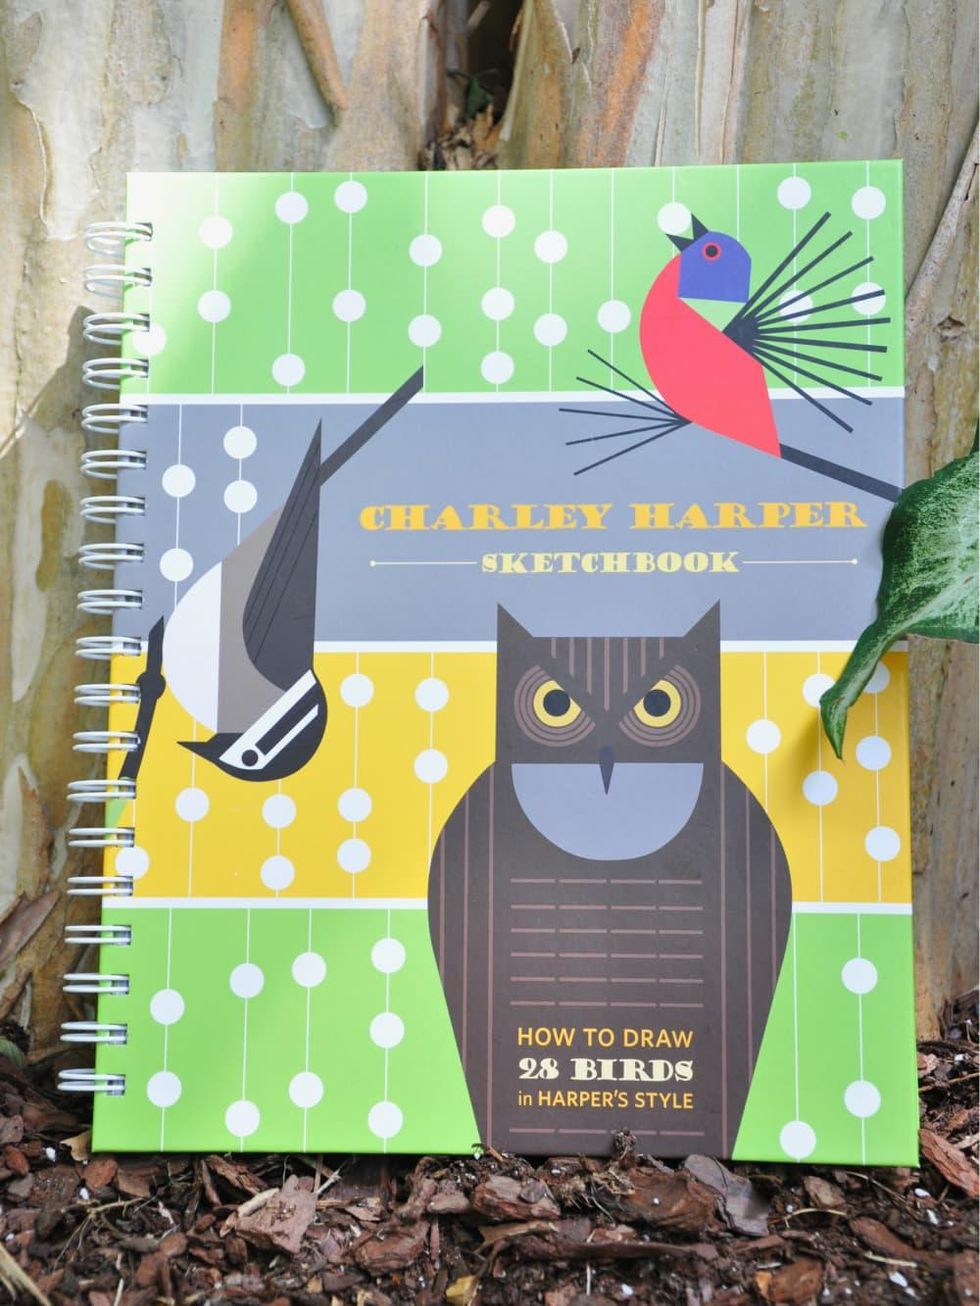 Charley Harper sketchbook